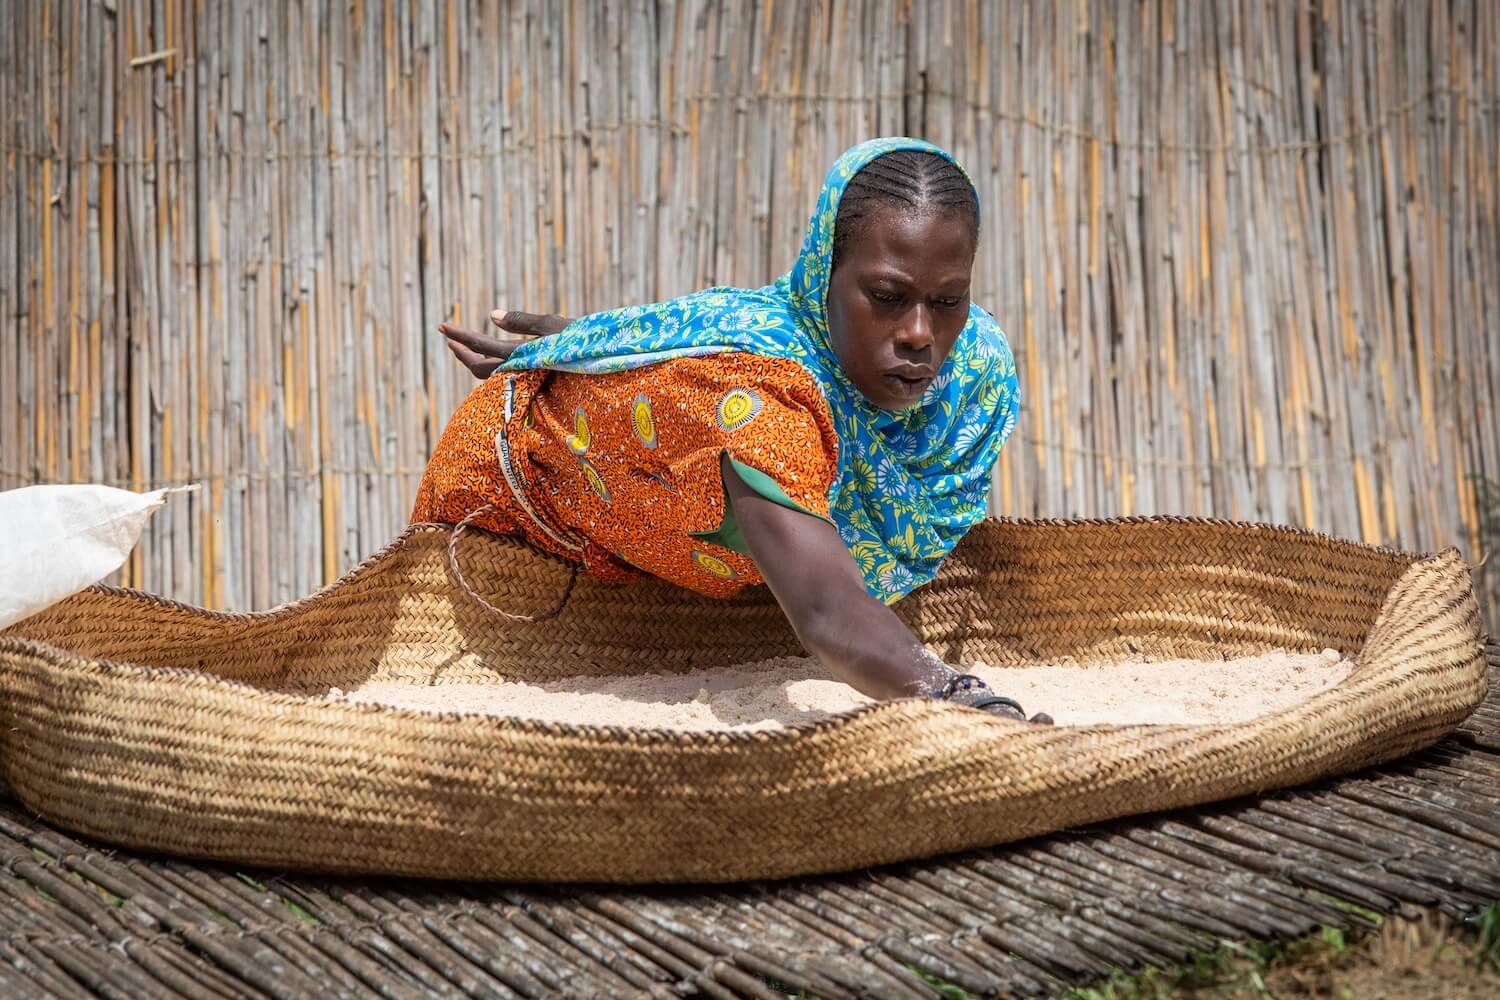 Vesnice Siaka, kmen Kotoko - Čadské jezero | Planeta lidí